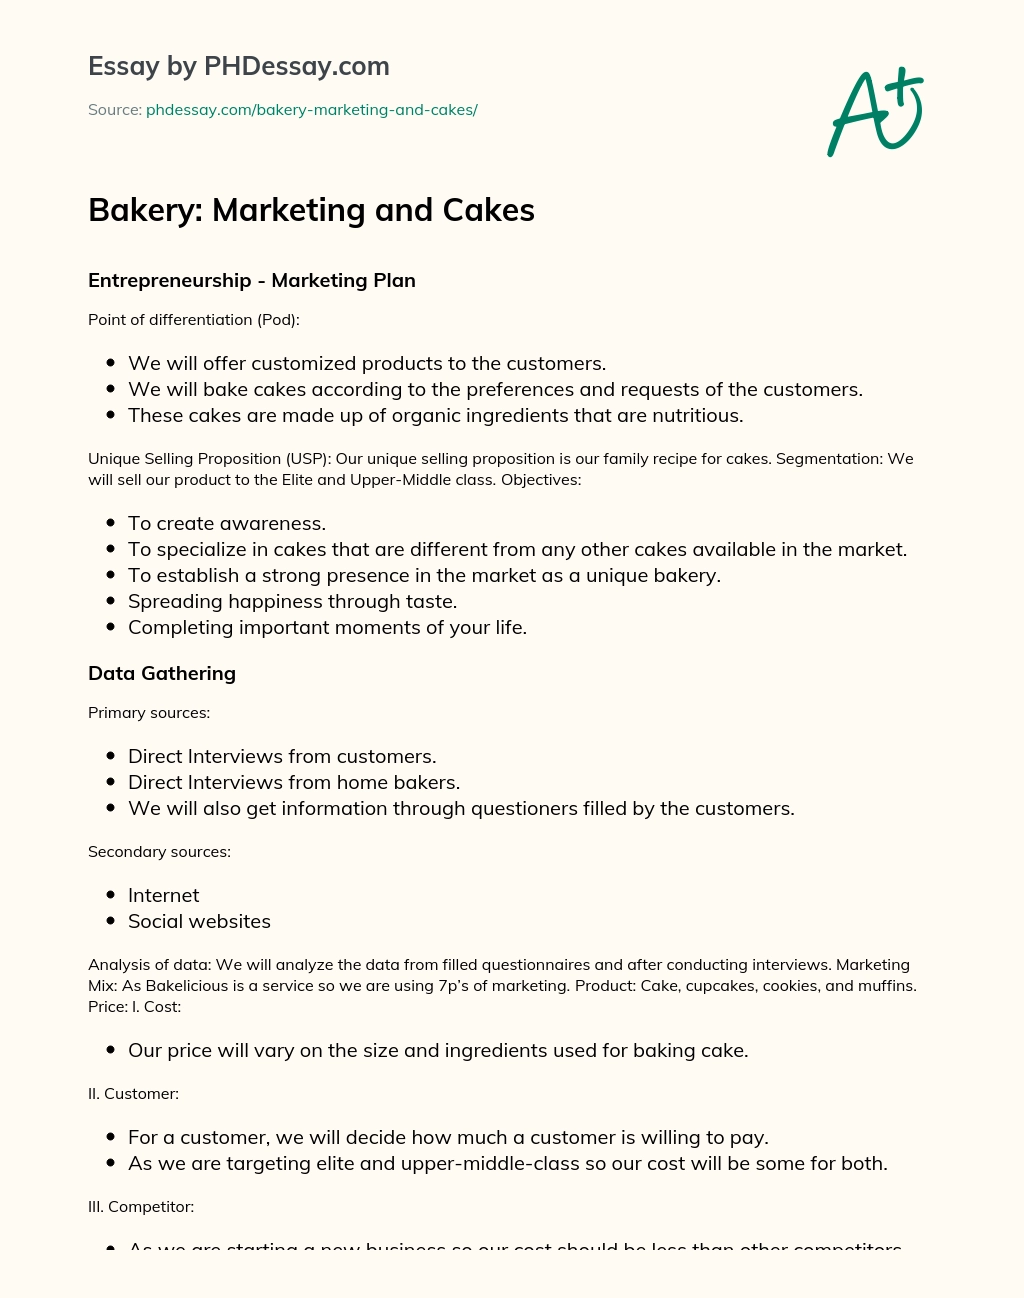 Bakery: Marketing and Cakes essay